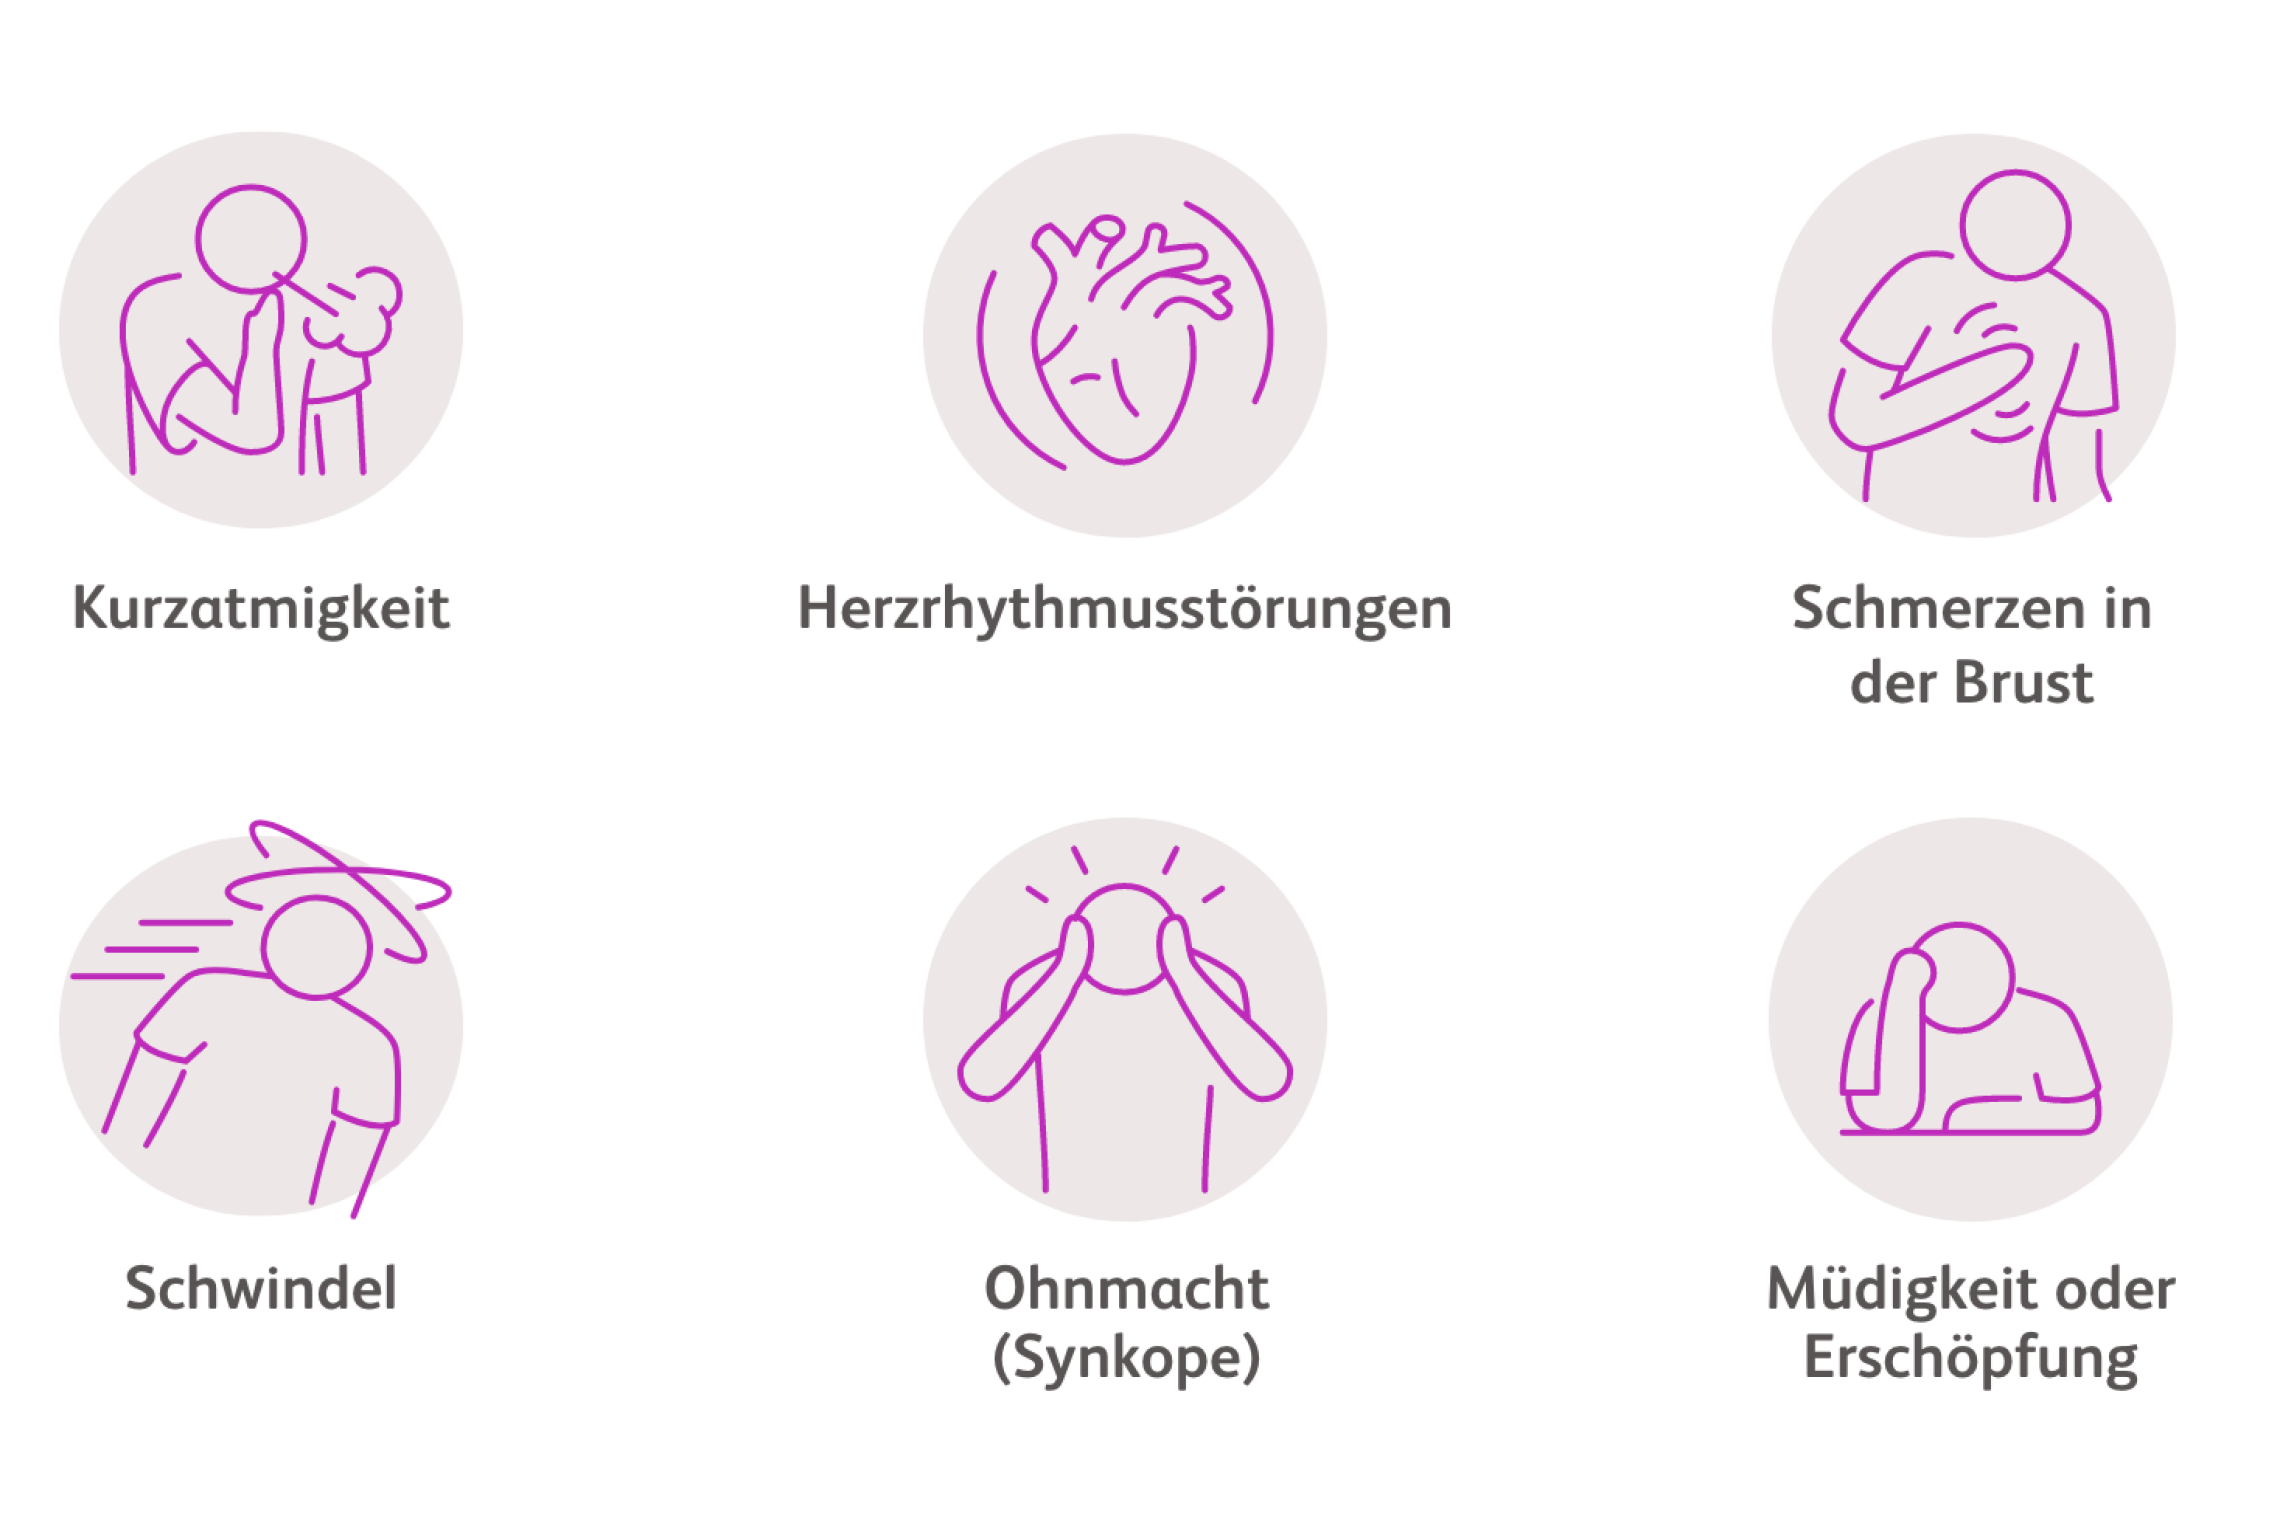 Icons der Nebenwirkungen – Kurzatmigkeit, Herzrythmusstörungen, Schmerzen in der Brust, Schwindel, Ohnmacht (Synkope) und Müdigkeit oder Erschöpfung